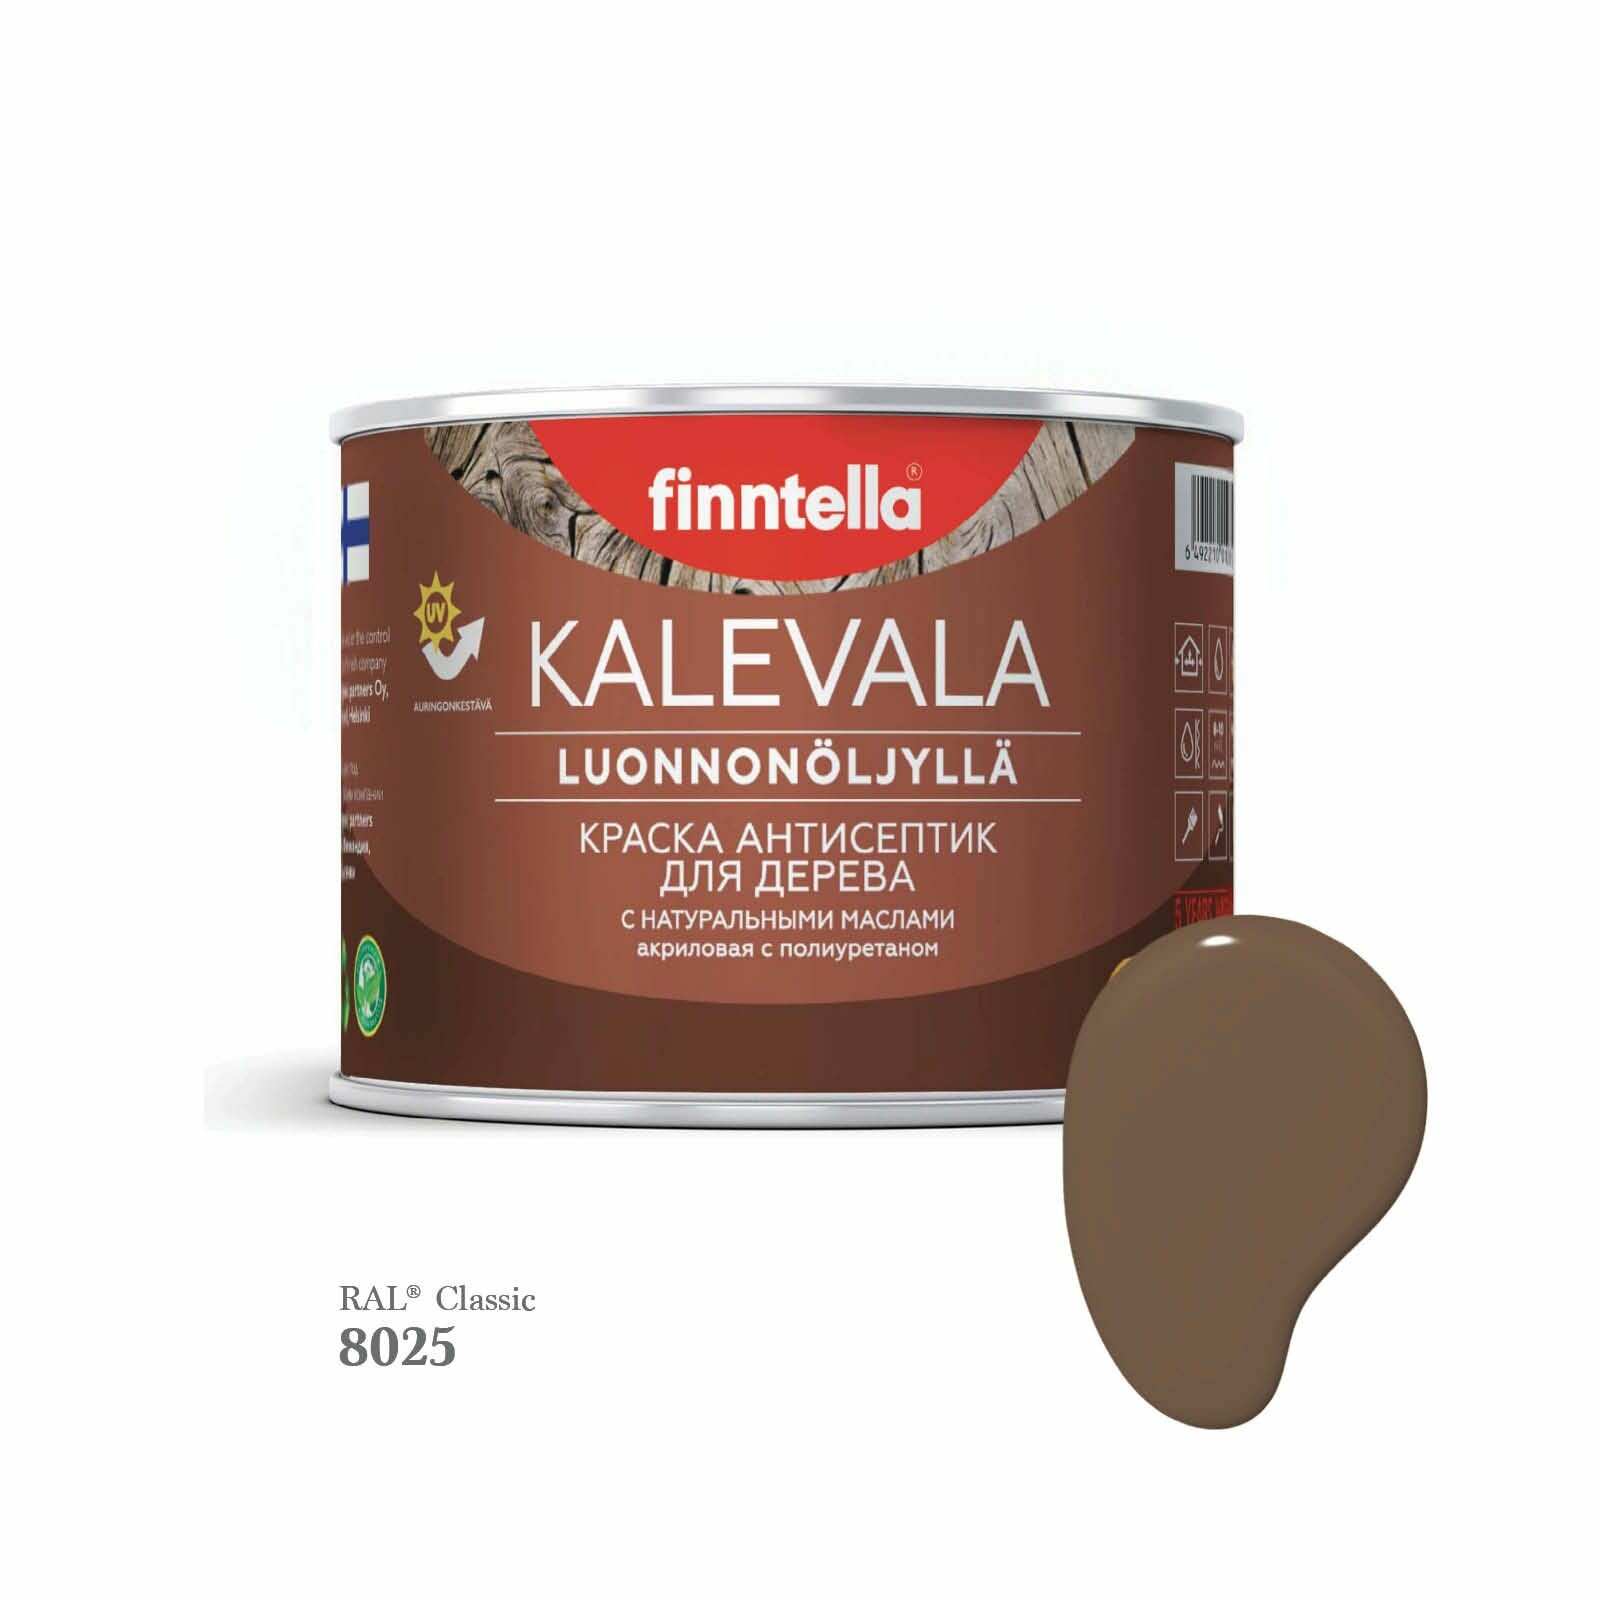 Краска для дерева и деревянных фасадов FINNTELLA KALEVALA, с натуральным маслом и полиуретаном, цвет RAL 8025 Бледно-коричневый (Pale brown), 0,45л